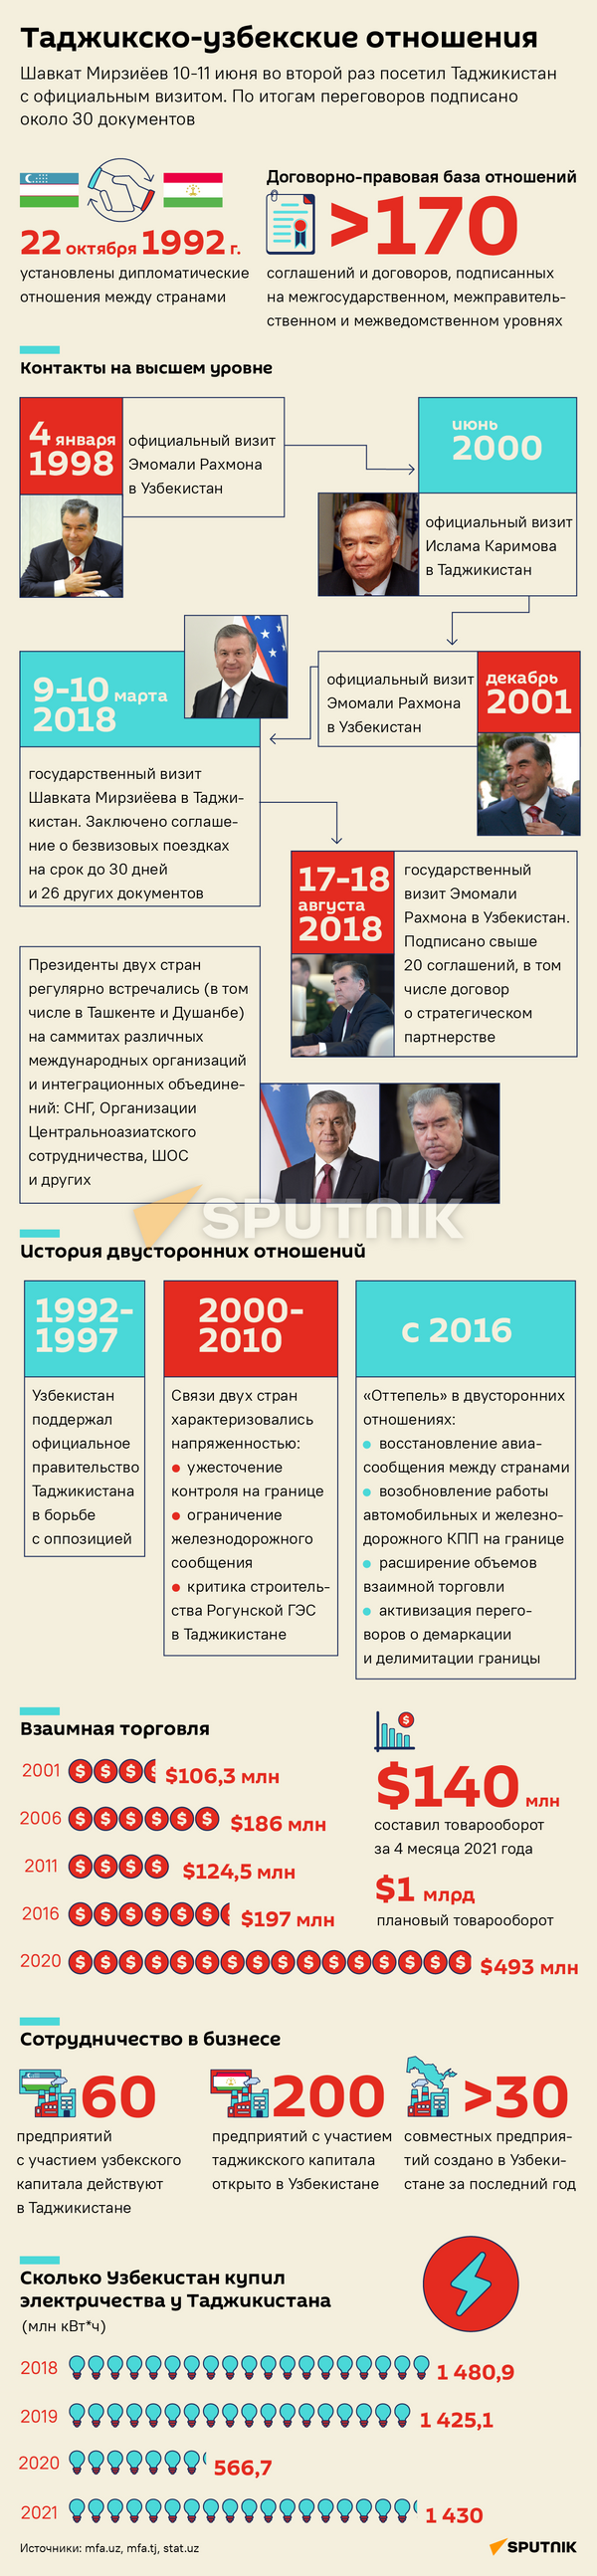 Таджикско-узбекские отношения - Sputnik Таджикистан